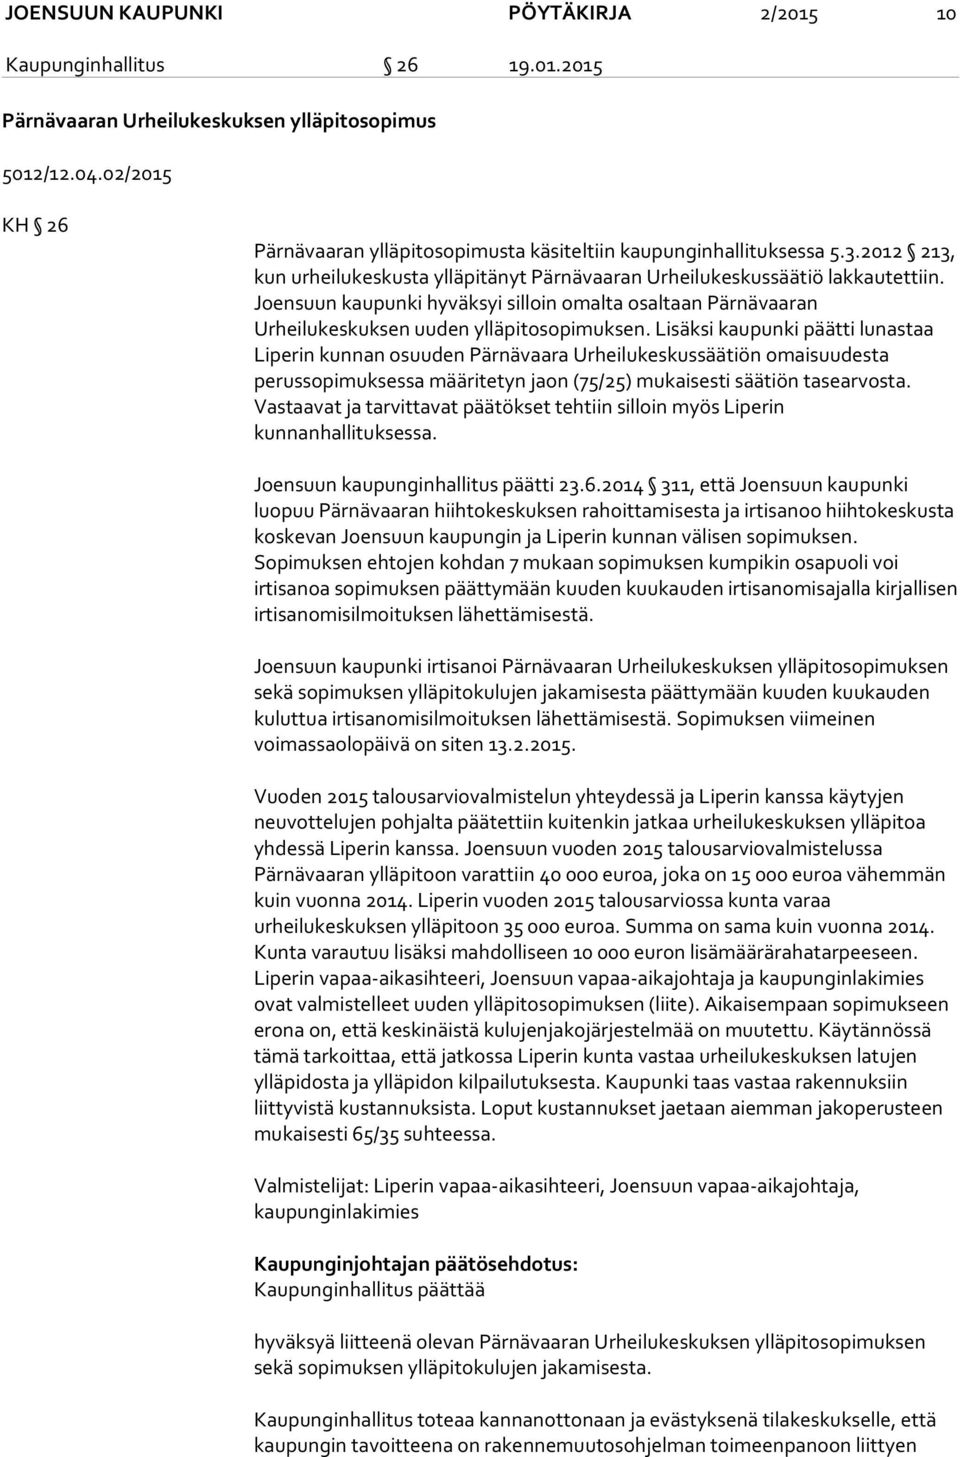 Joensuun kaupunki hyväksyi silloin omalta osaltaan Pärnävaaran Urheilukeskuksen uuden ylläpitosopimuksen.